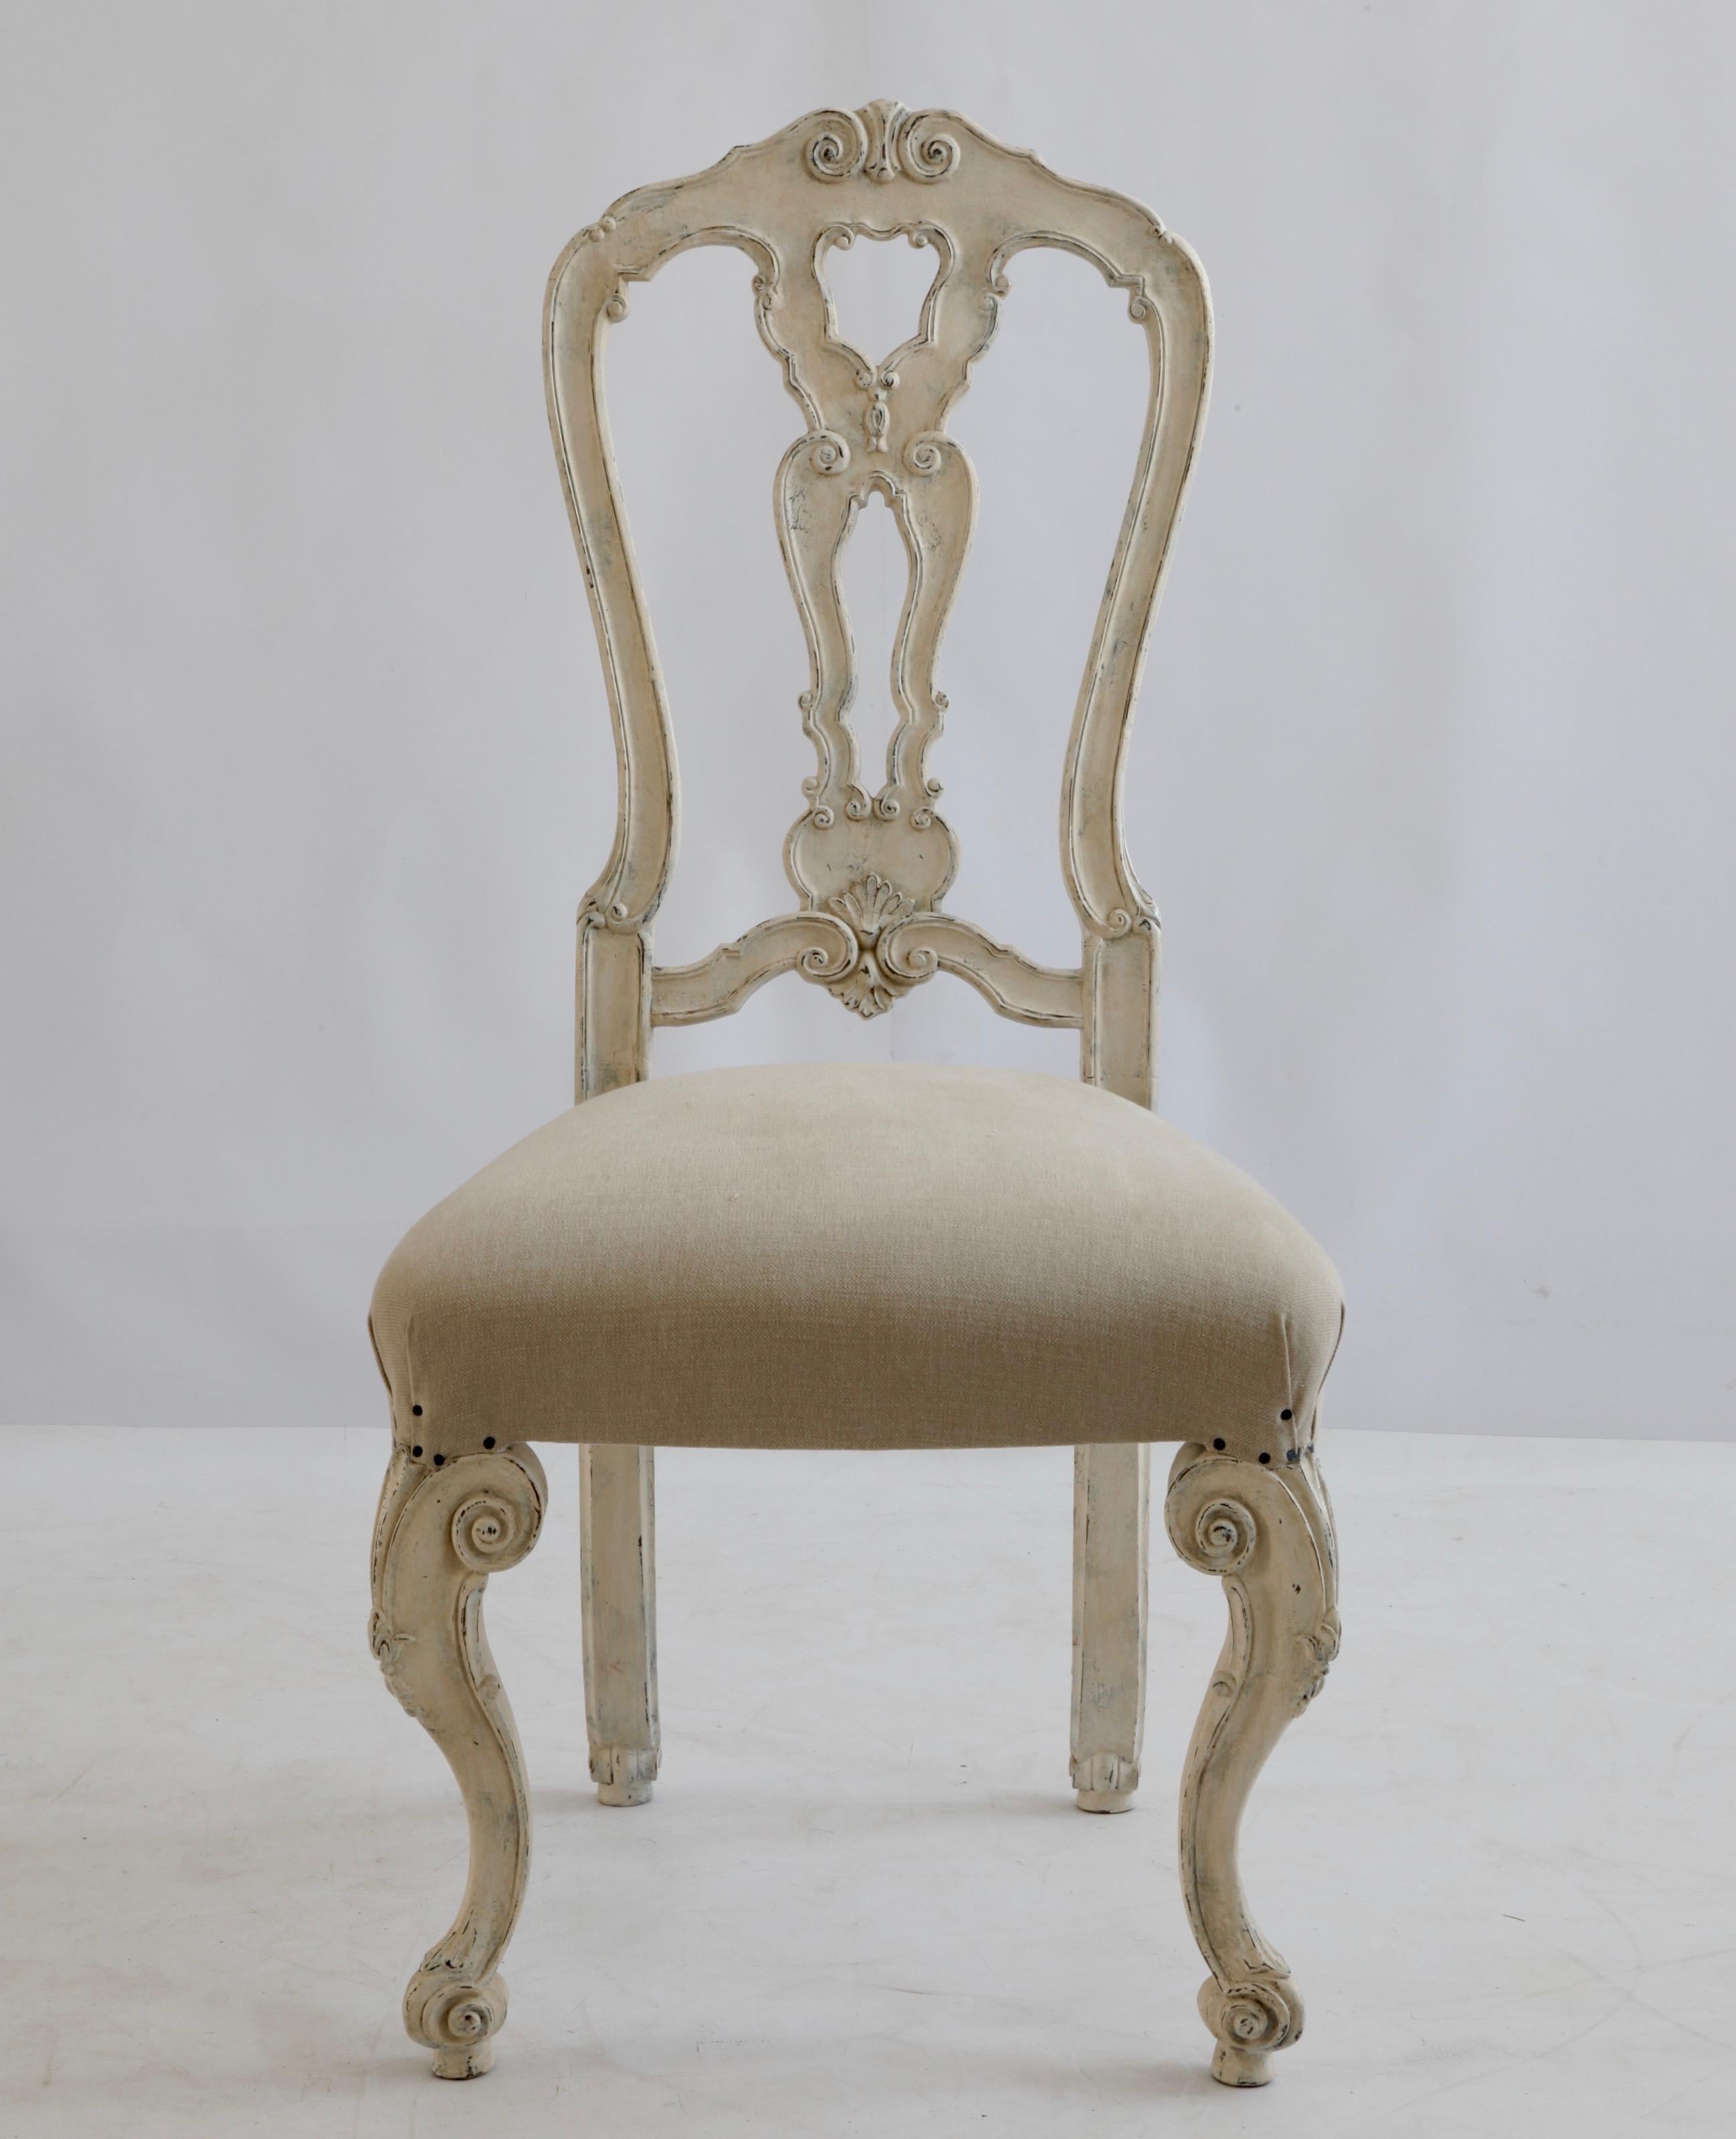 Ensemble de six chaises de salle à manger de style vénitien, sculptées à la main, avec de hauts dossiers et des proportions générales élégantes.
Les chaises sont finies dans une patine blanche Gesso peinte à la main et vieillie pour donner une